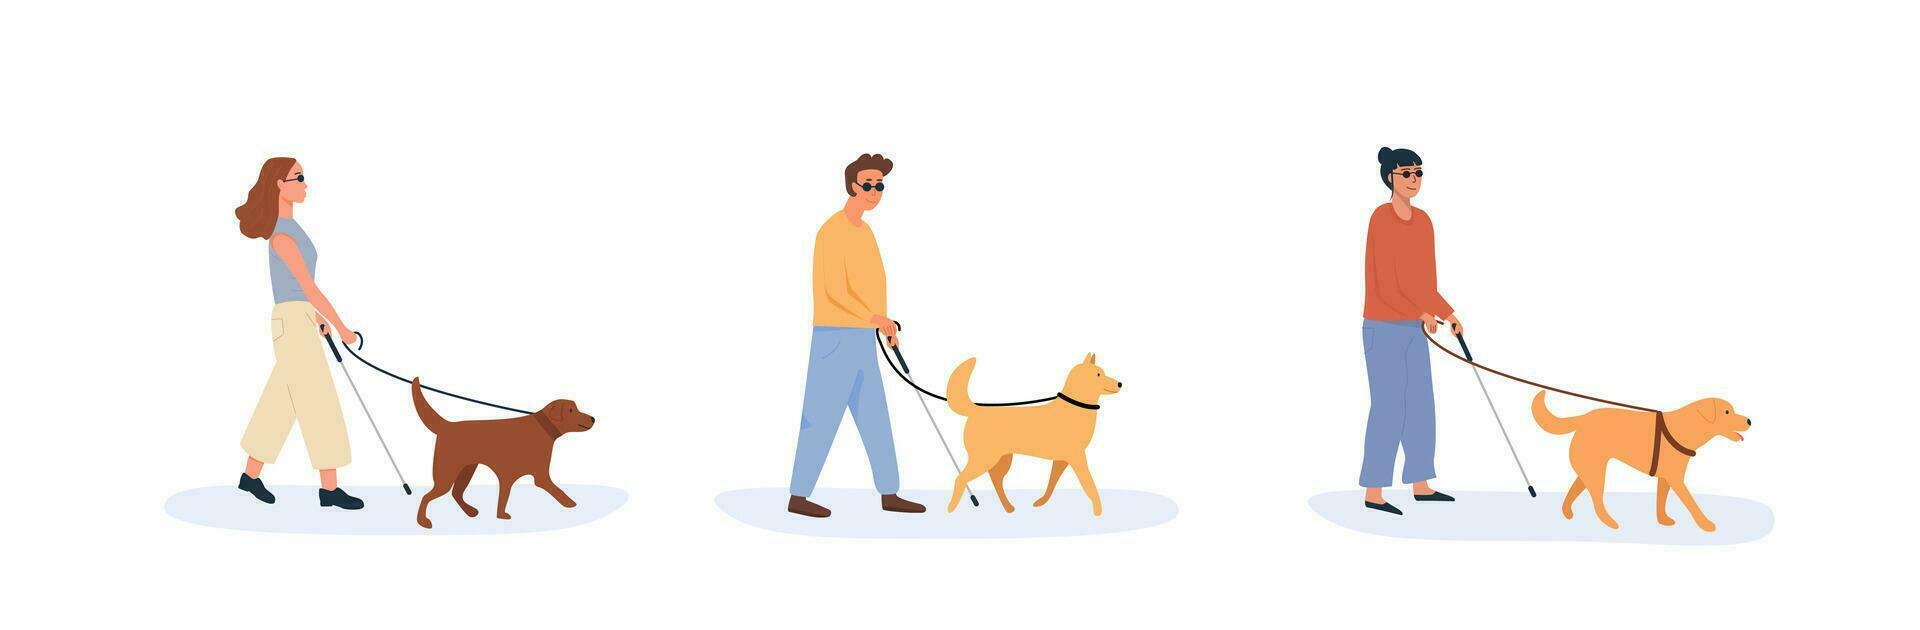 en guide hund med blind person gående tillsammans. uppsättning av människor med handikapp använder sig av hjälp av hund. samling av platt stil tecken. vektor illustration.